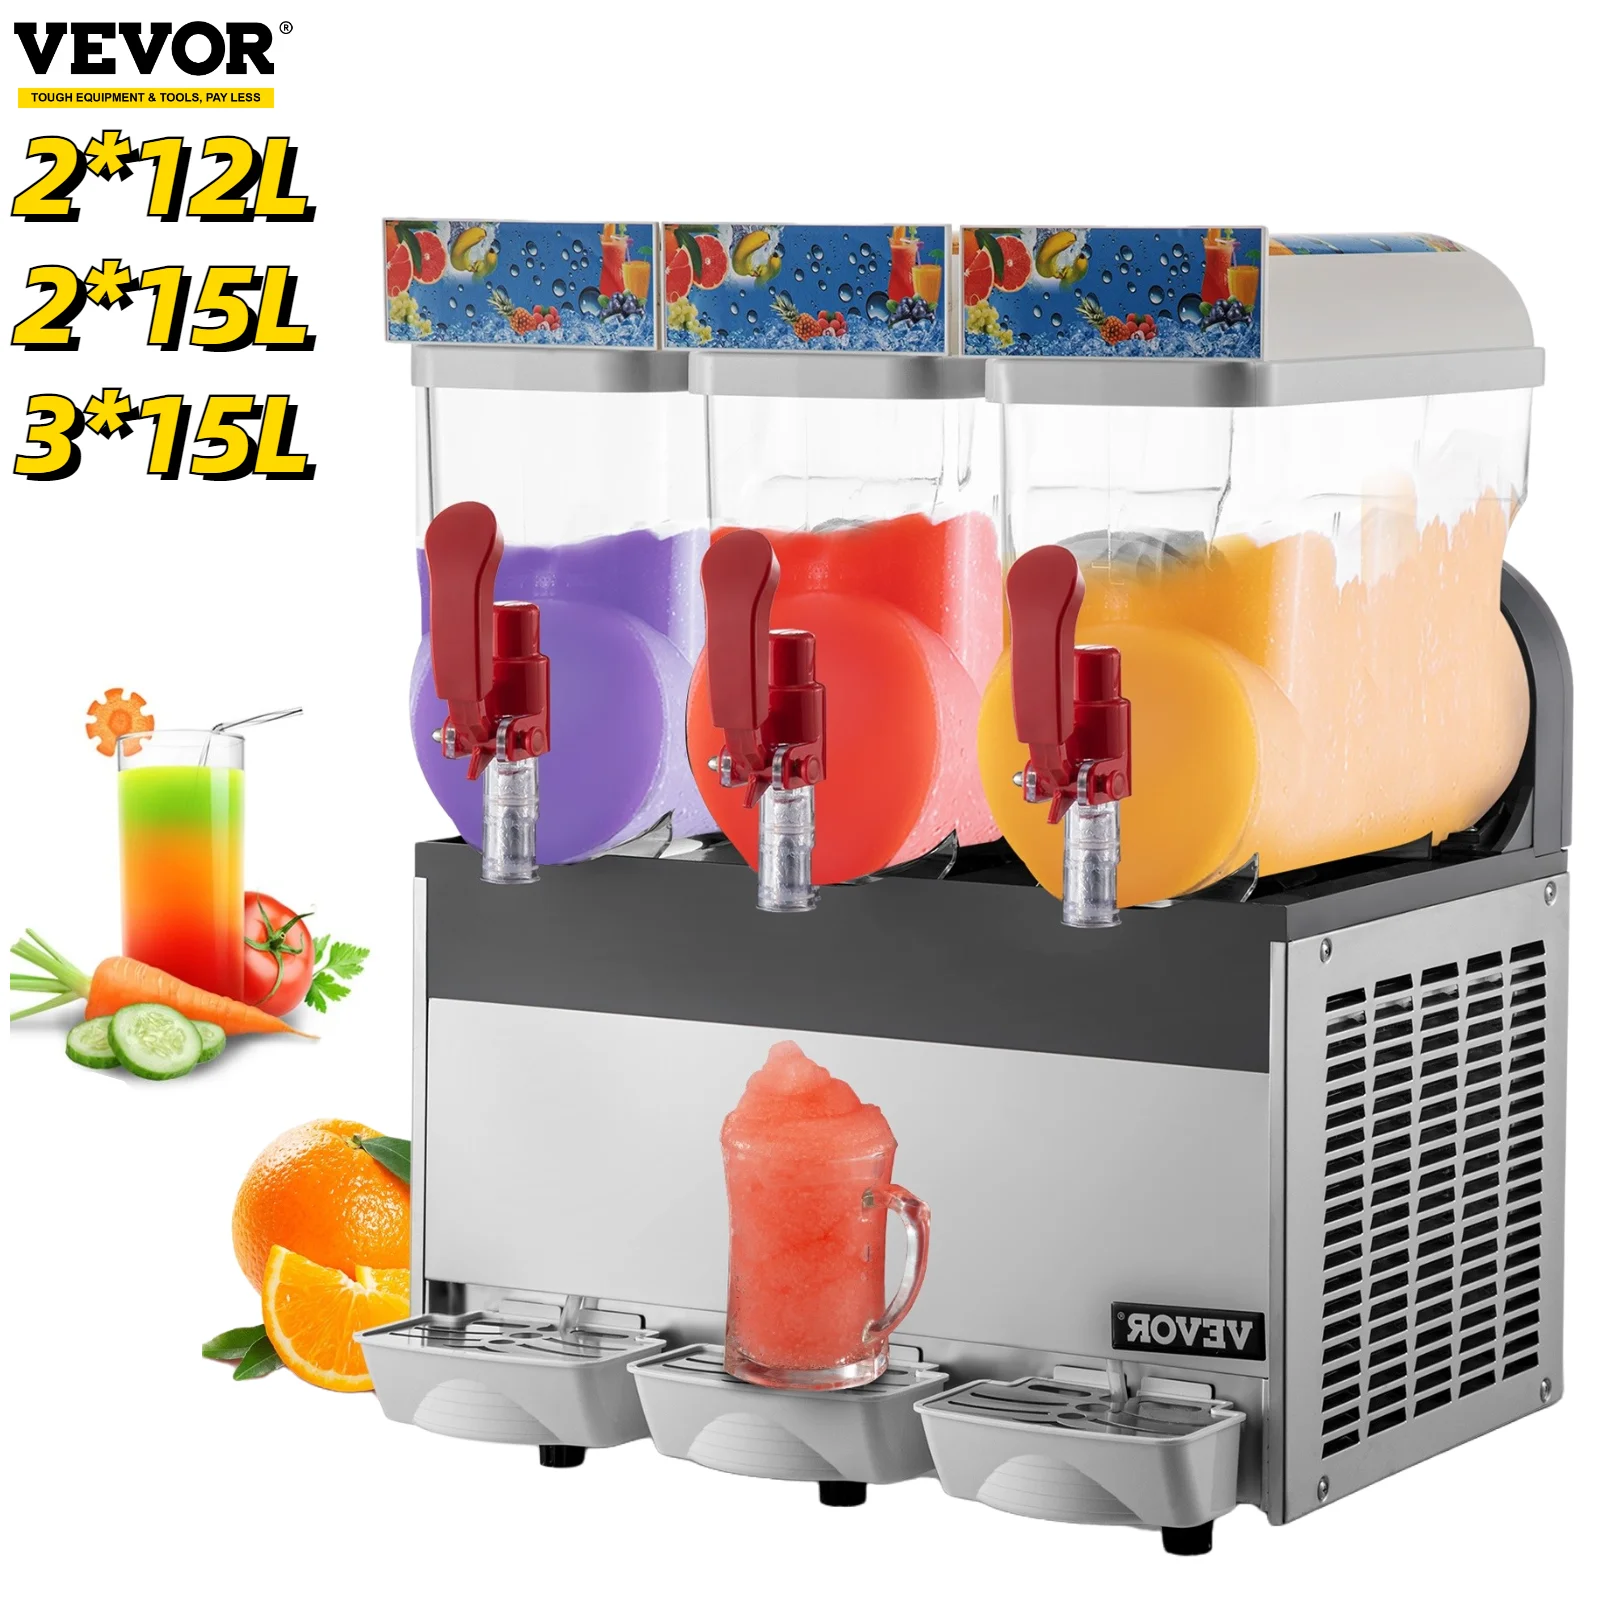 

VEVOR коммерческая машина для приготовления сланцев 24L 30L 45L, устройство для приготовления замороженных напитков, кухонное приспособление для ...